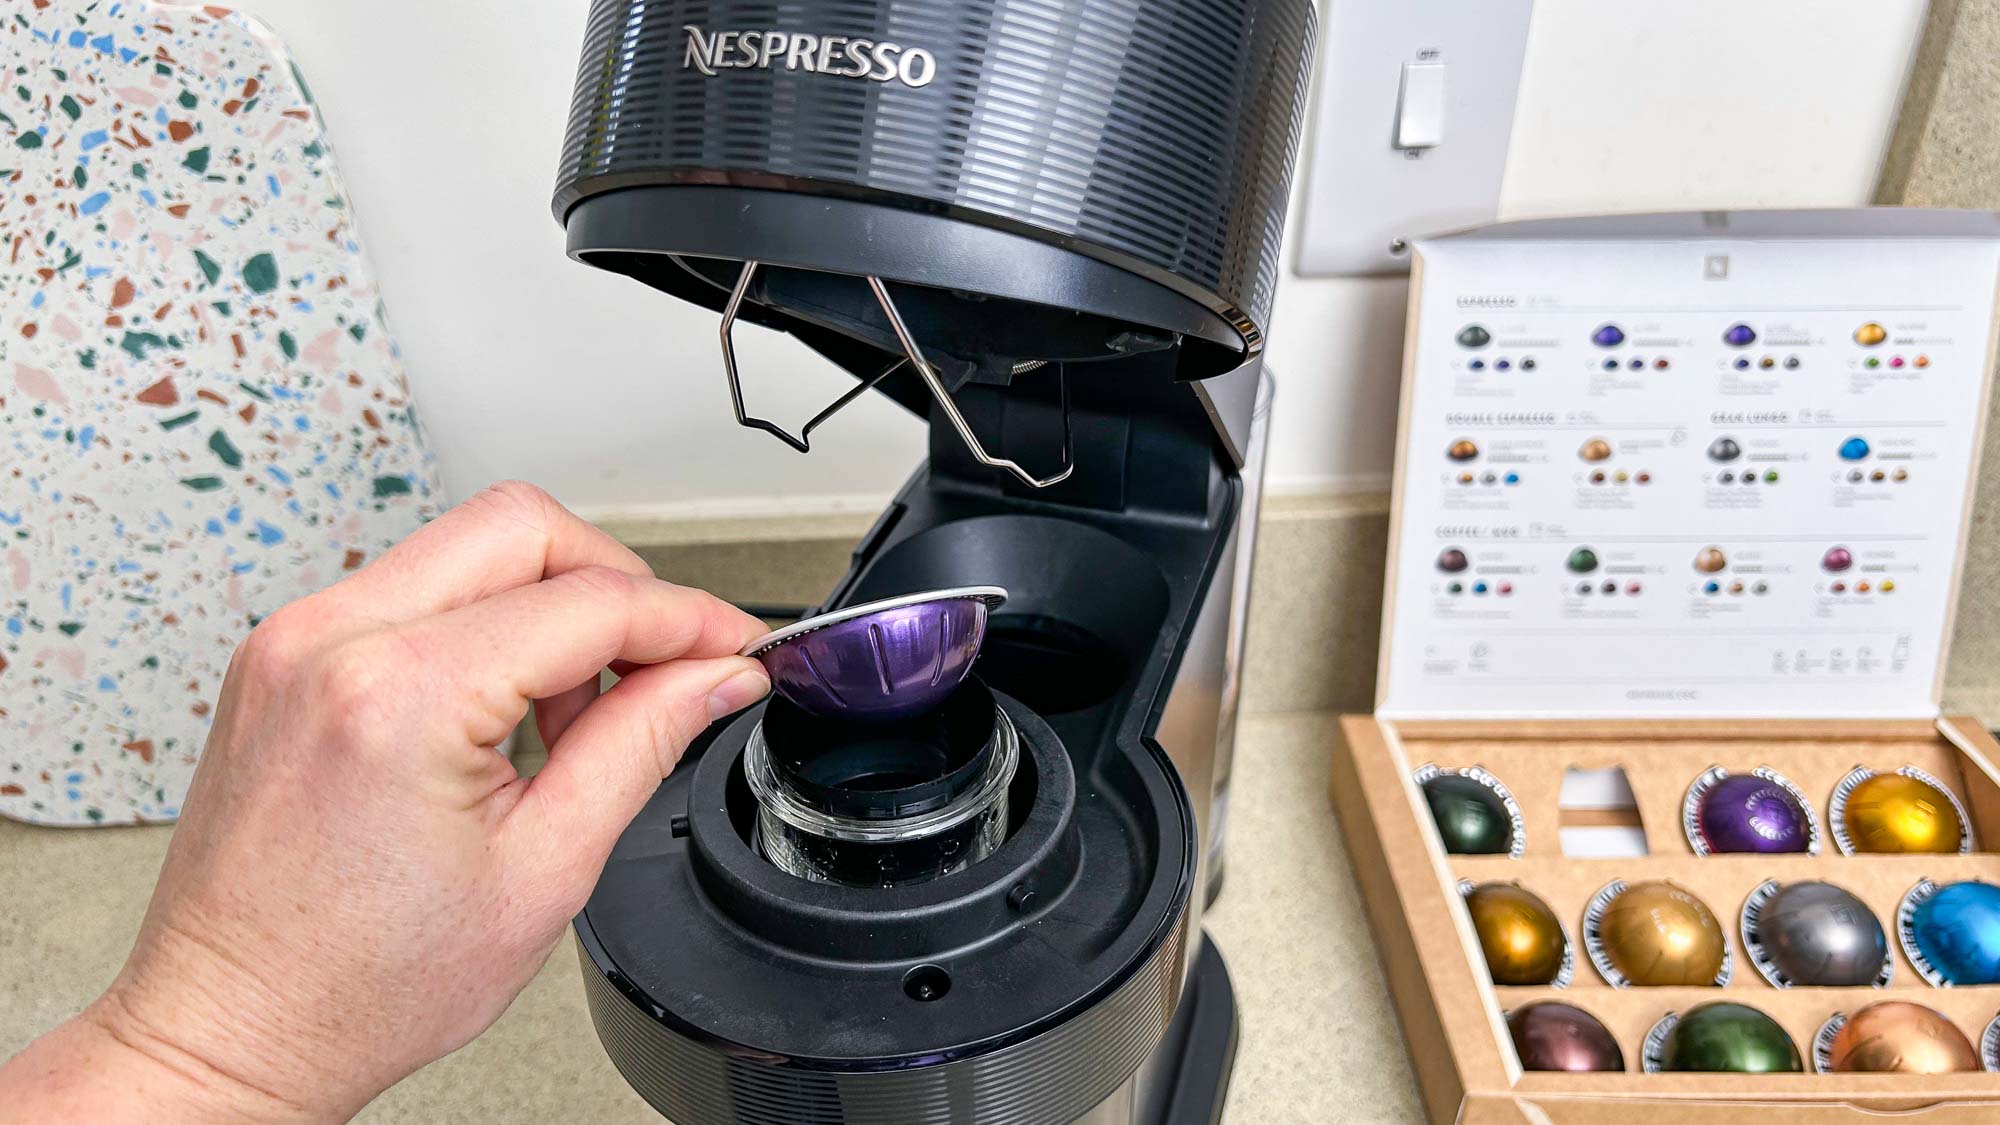 Nespresso Vertuo Next espresso pod